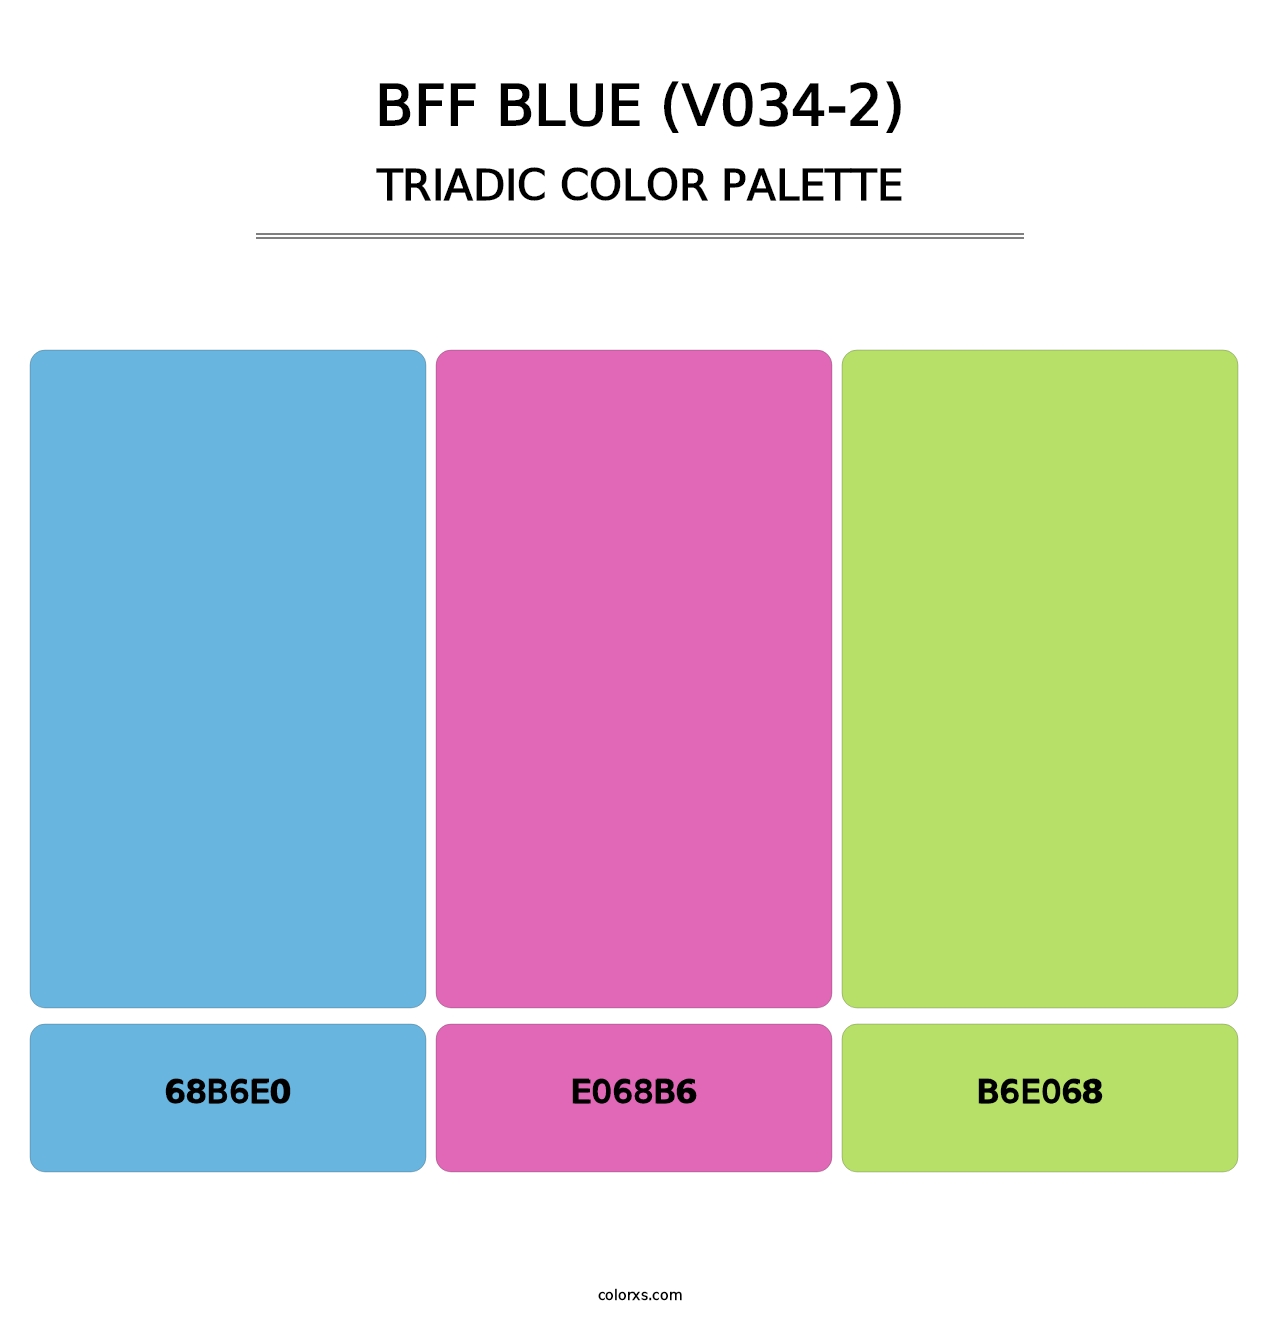 BFF Blue (V034-2) - Triadic Color Palette